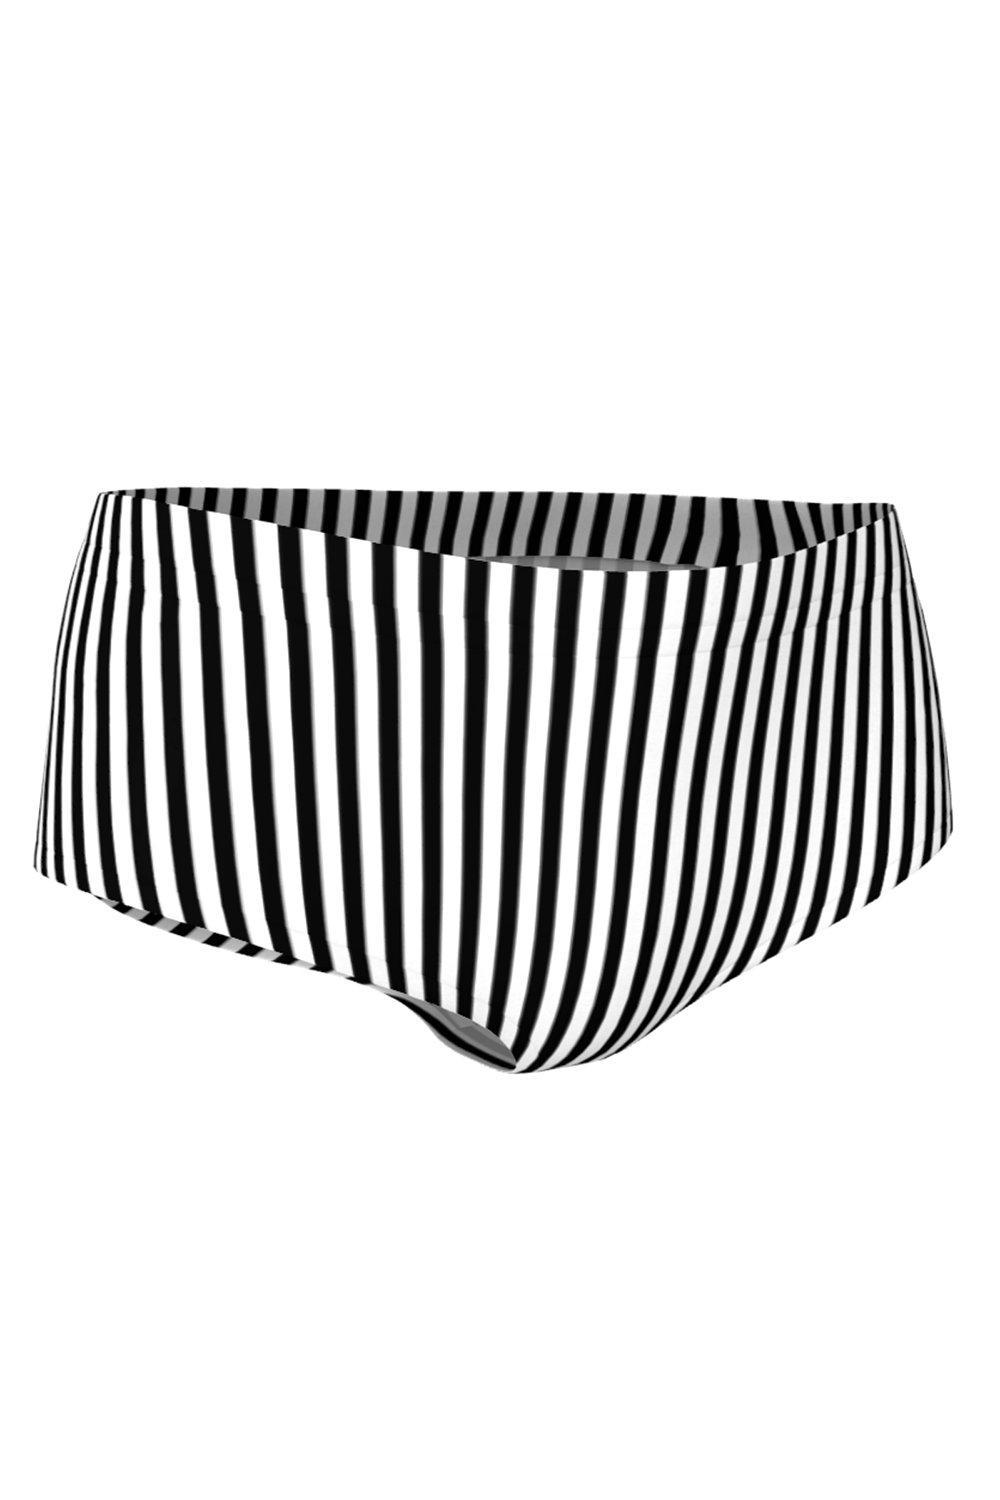 Black and White Stripe Bikini Bottoms